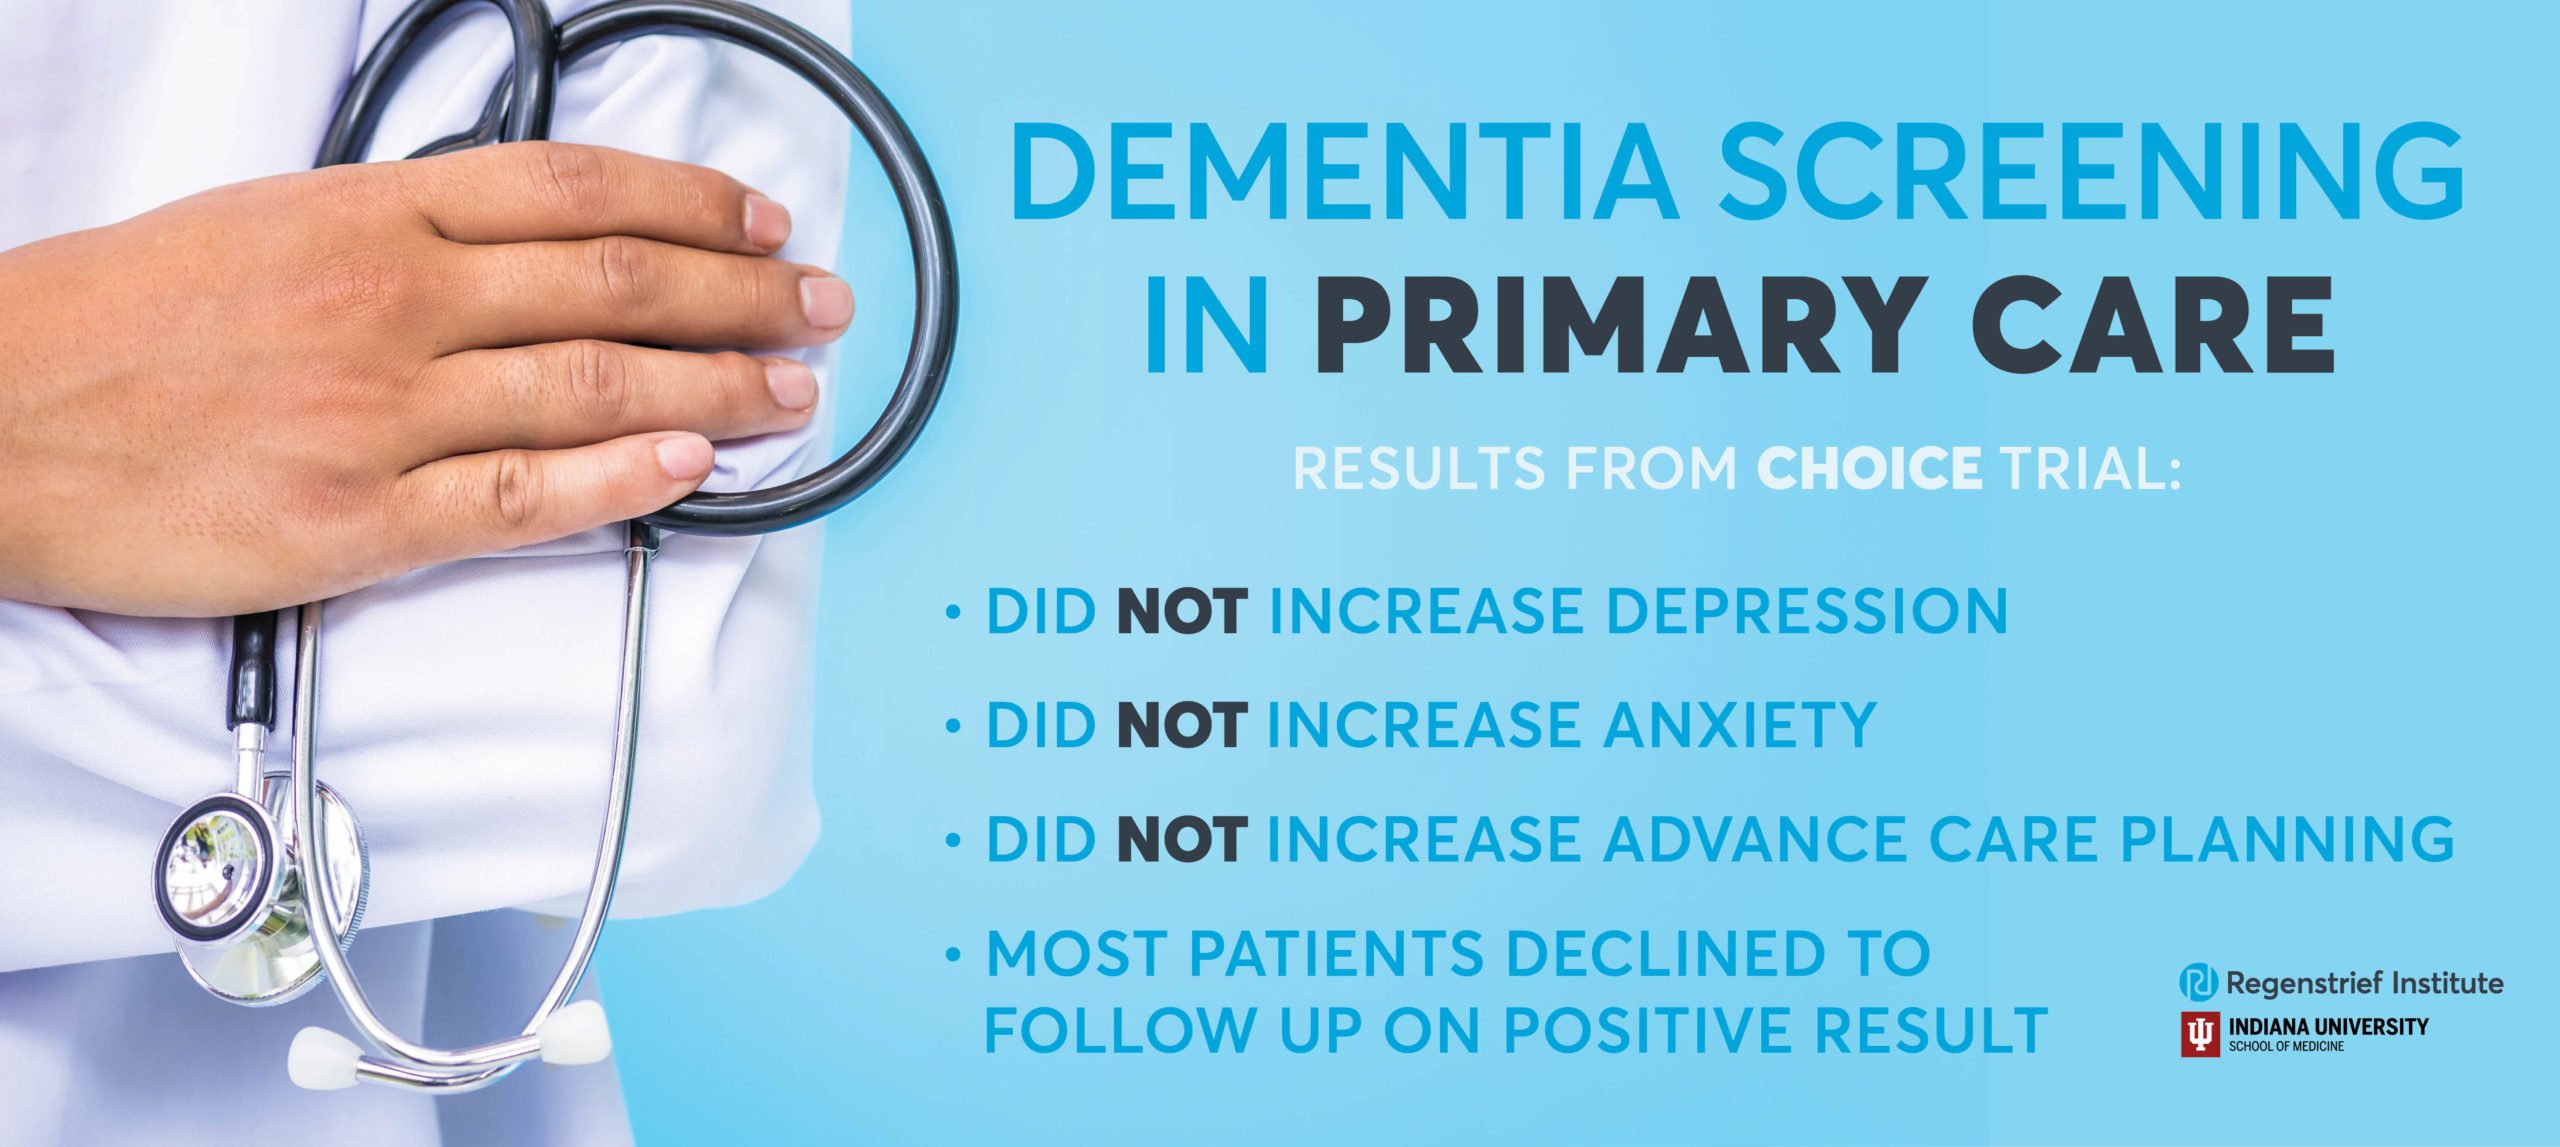 Dementia screening primary care